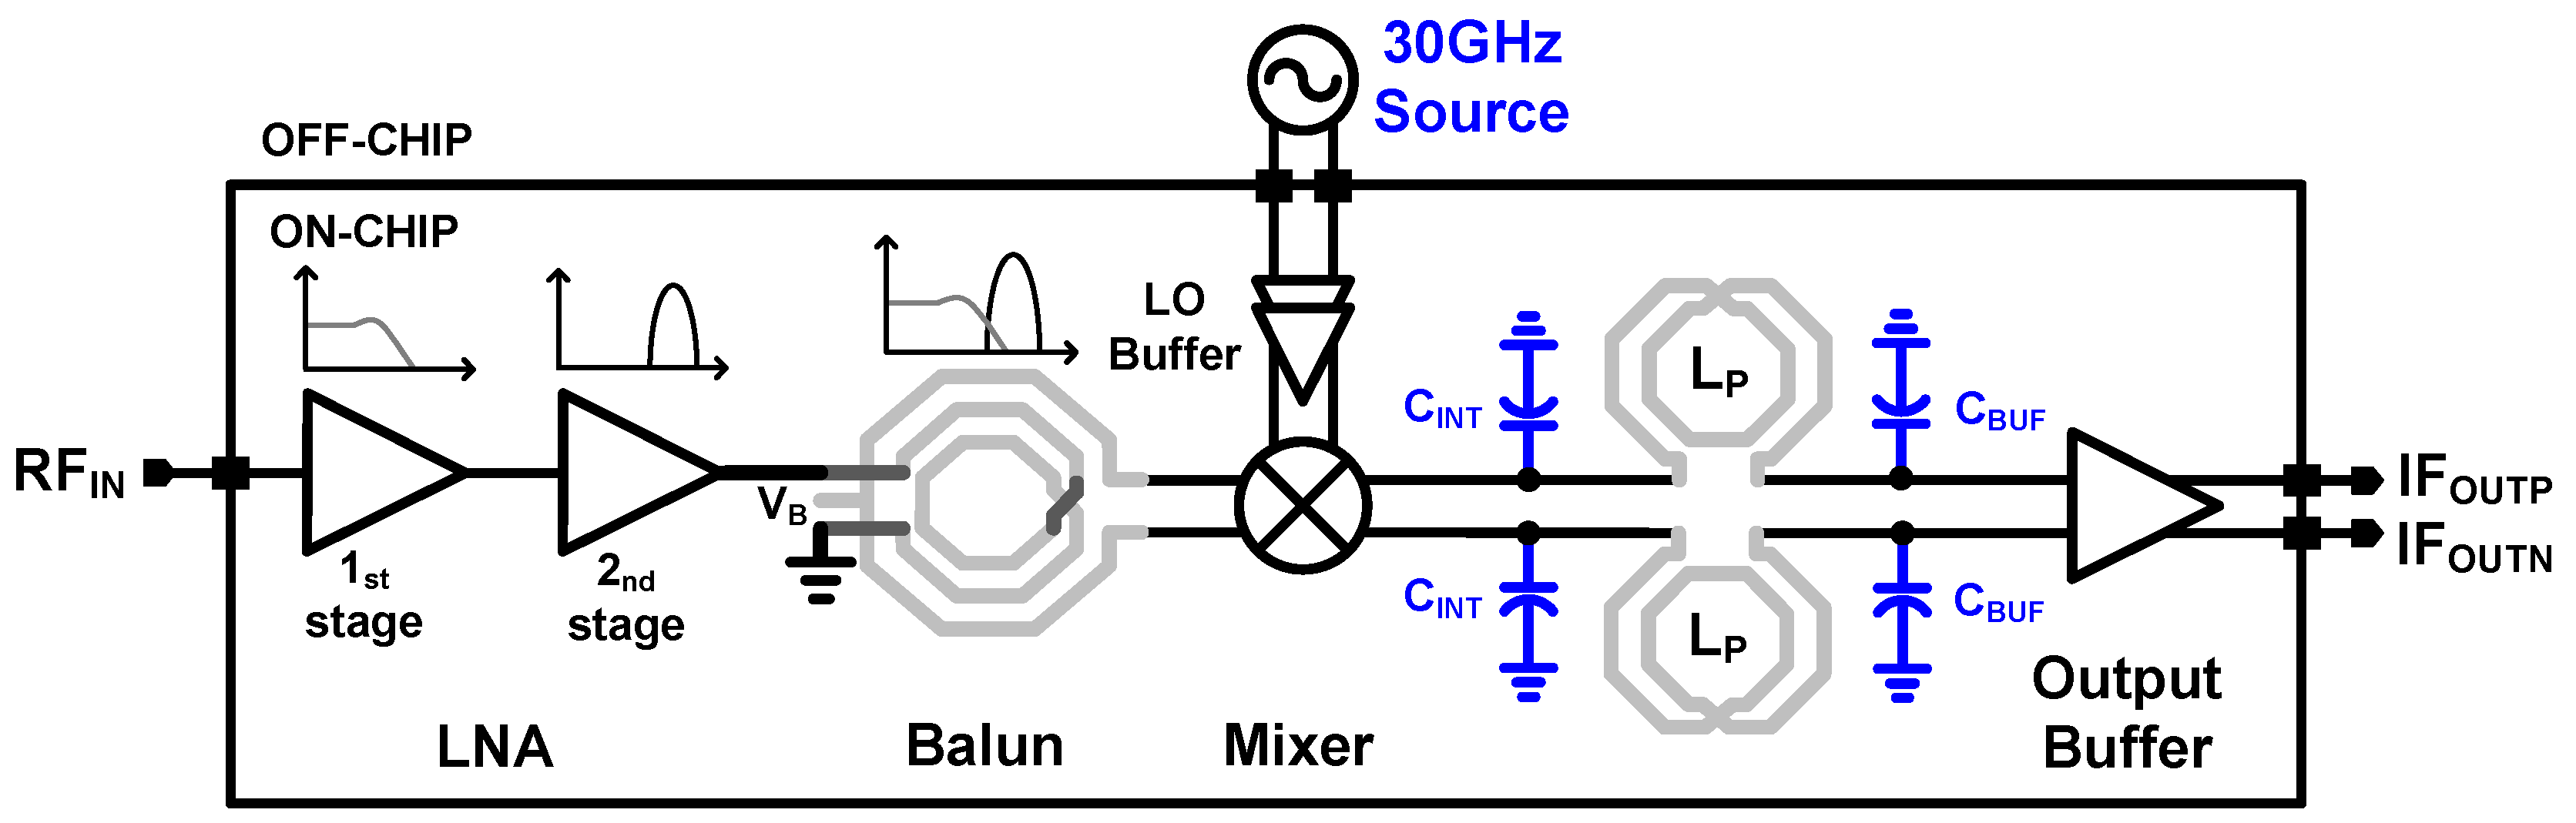 433 MHz Low Noise High Gain Amplifier LNA Built-In limiteur SAW Filter